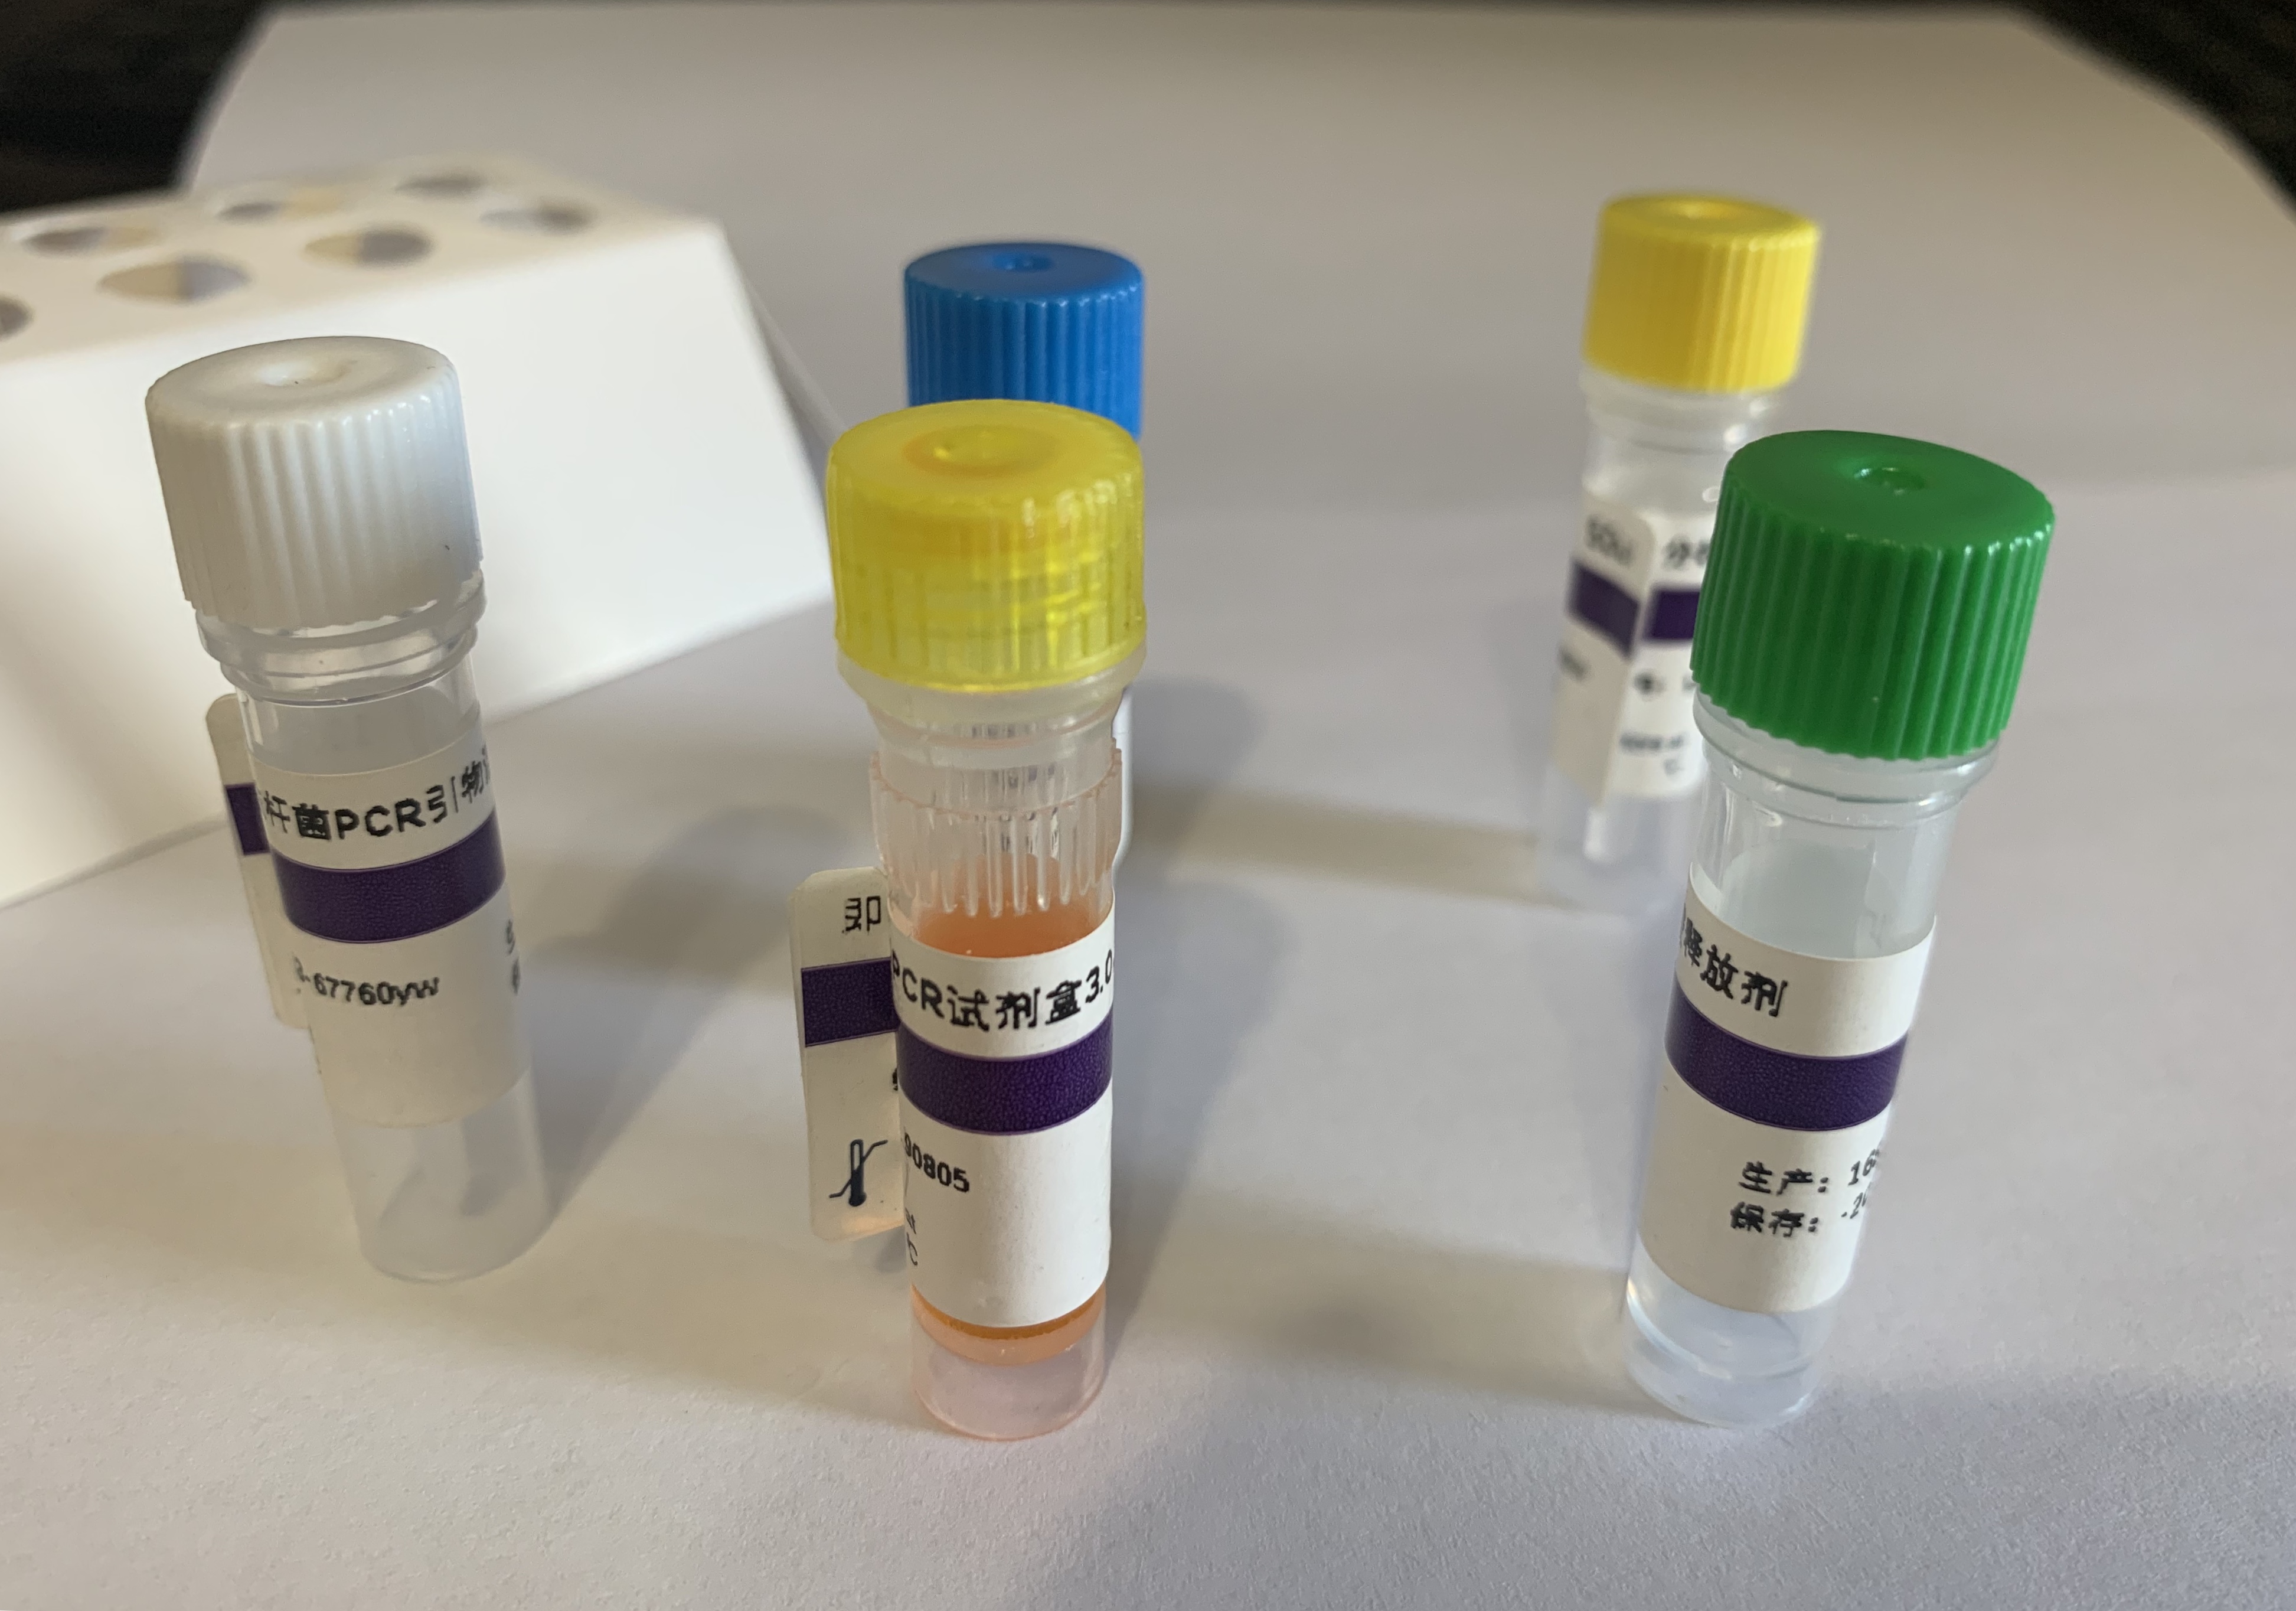 甲基营养型芽孢杆菌PCR试剂盒